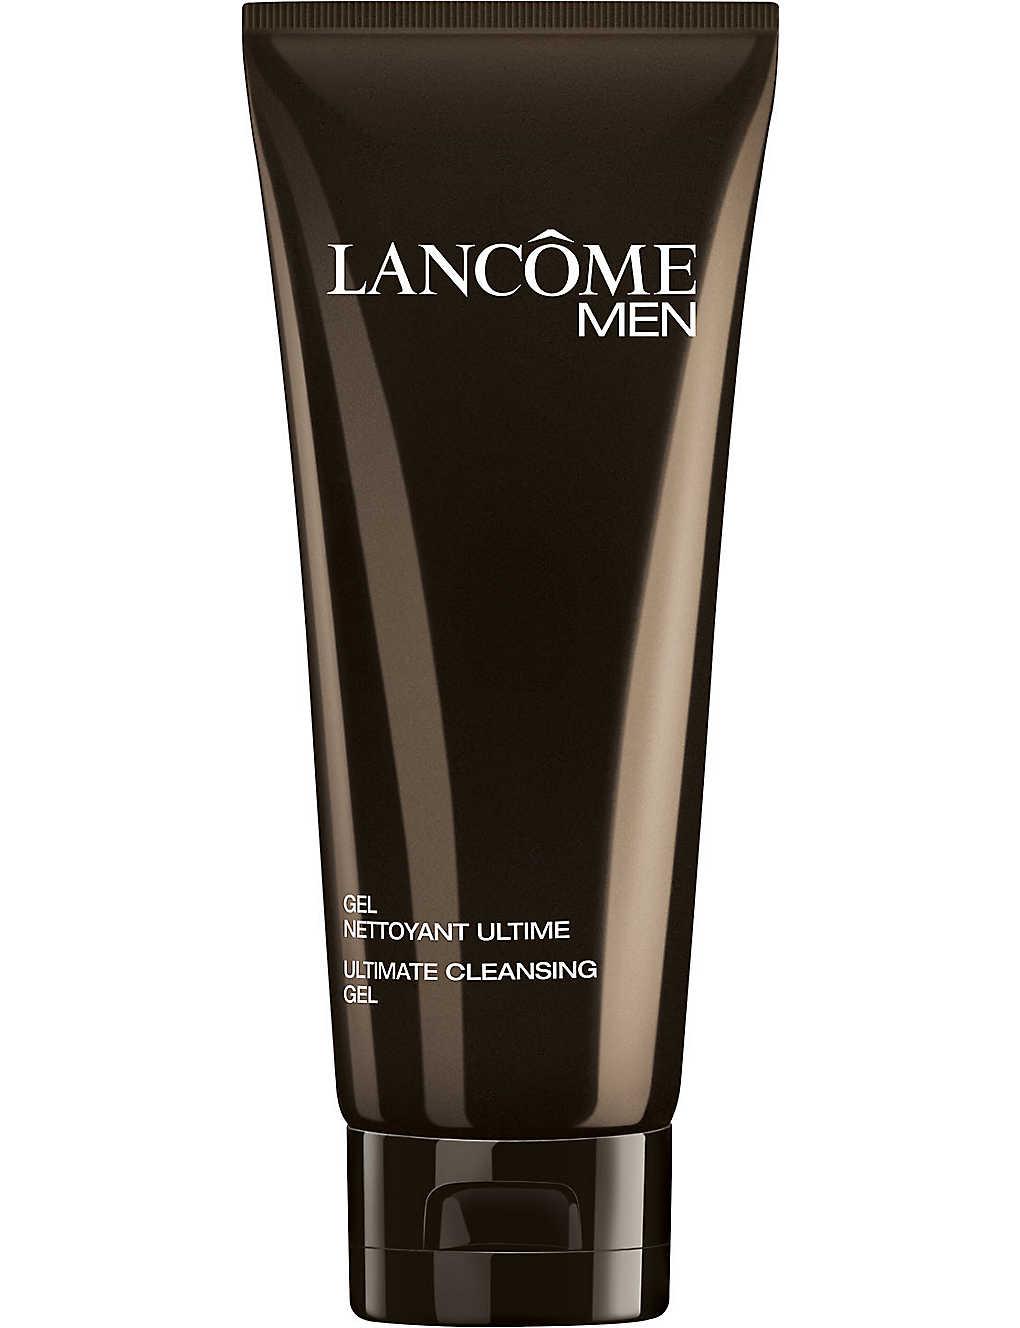 Lancôme Men Ultimate Cleansing Gel 3 oz